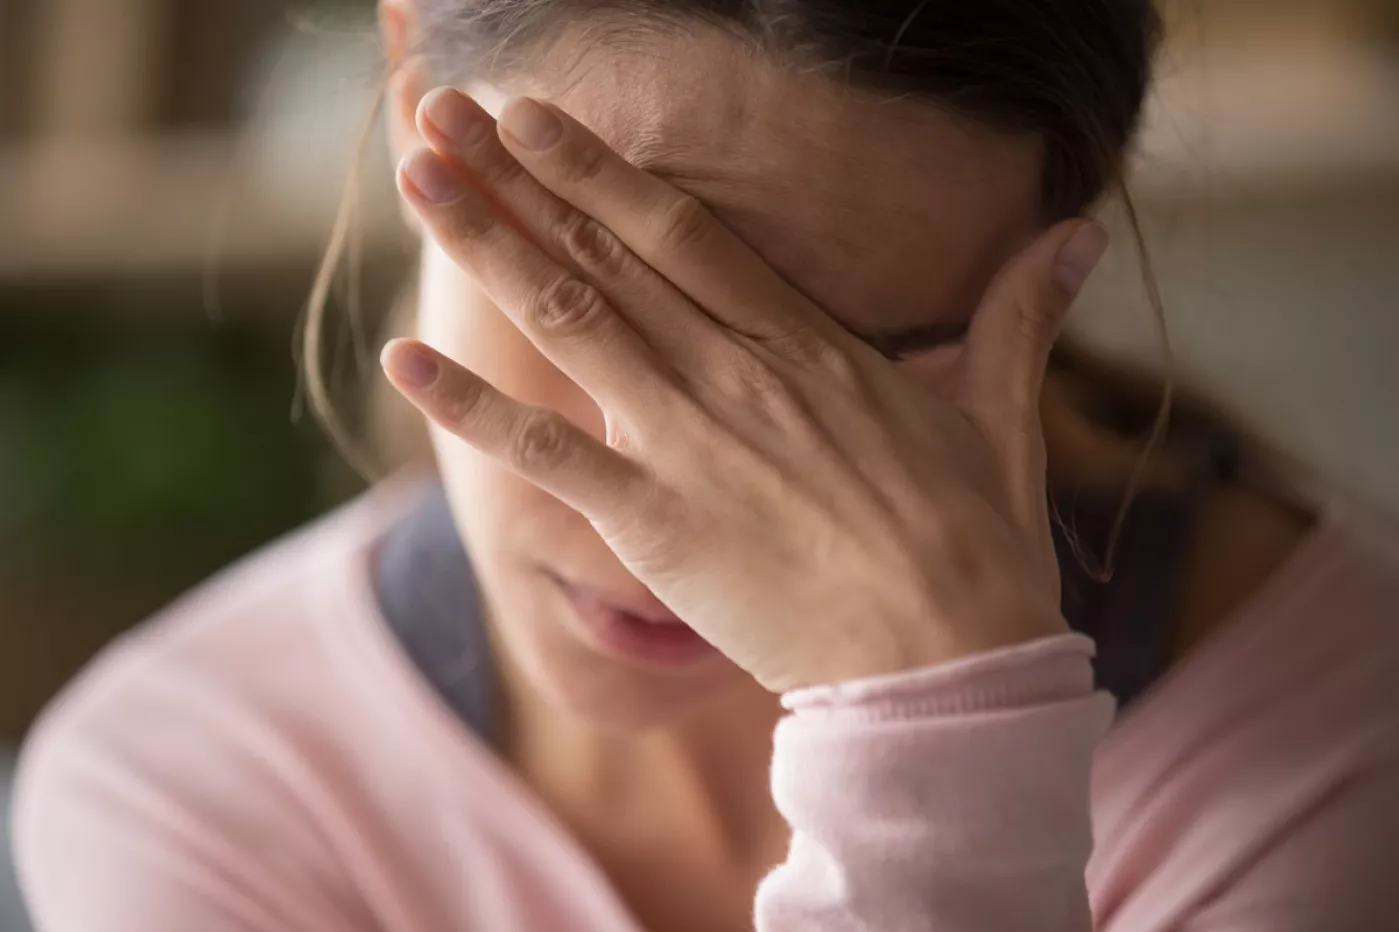 Dolor de cabeza, fatiga, palpitaciones, depresión, tos, dolor articular o insomnio son algunos de los síntomas persistentes en el síndrome postcovid.